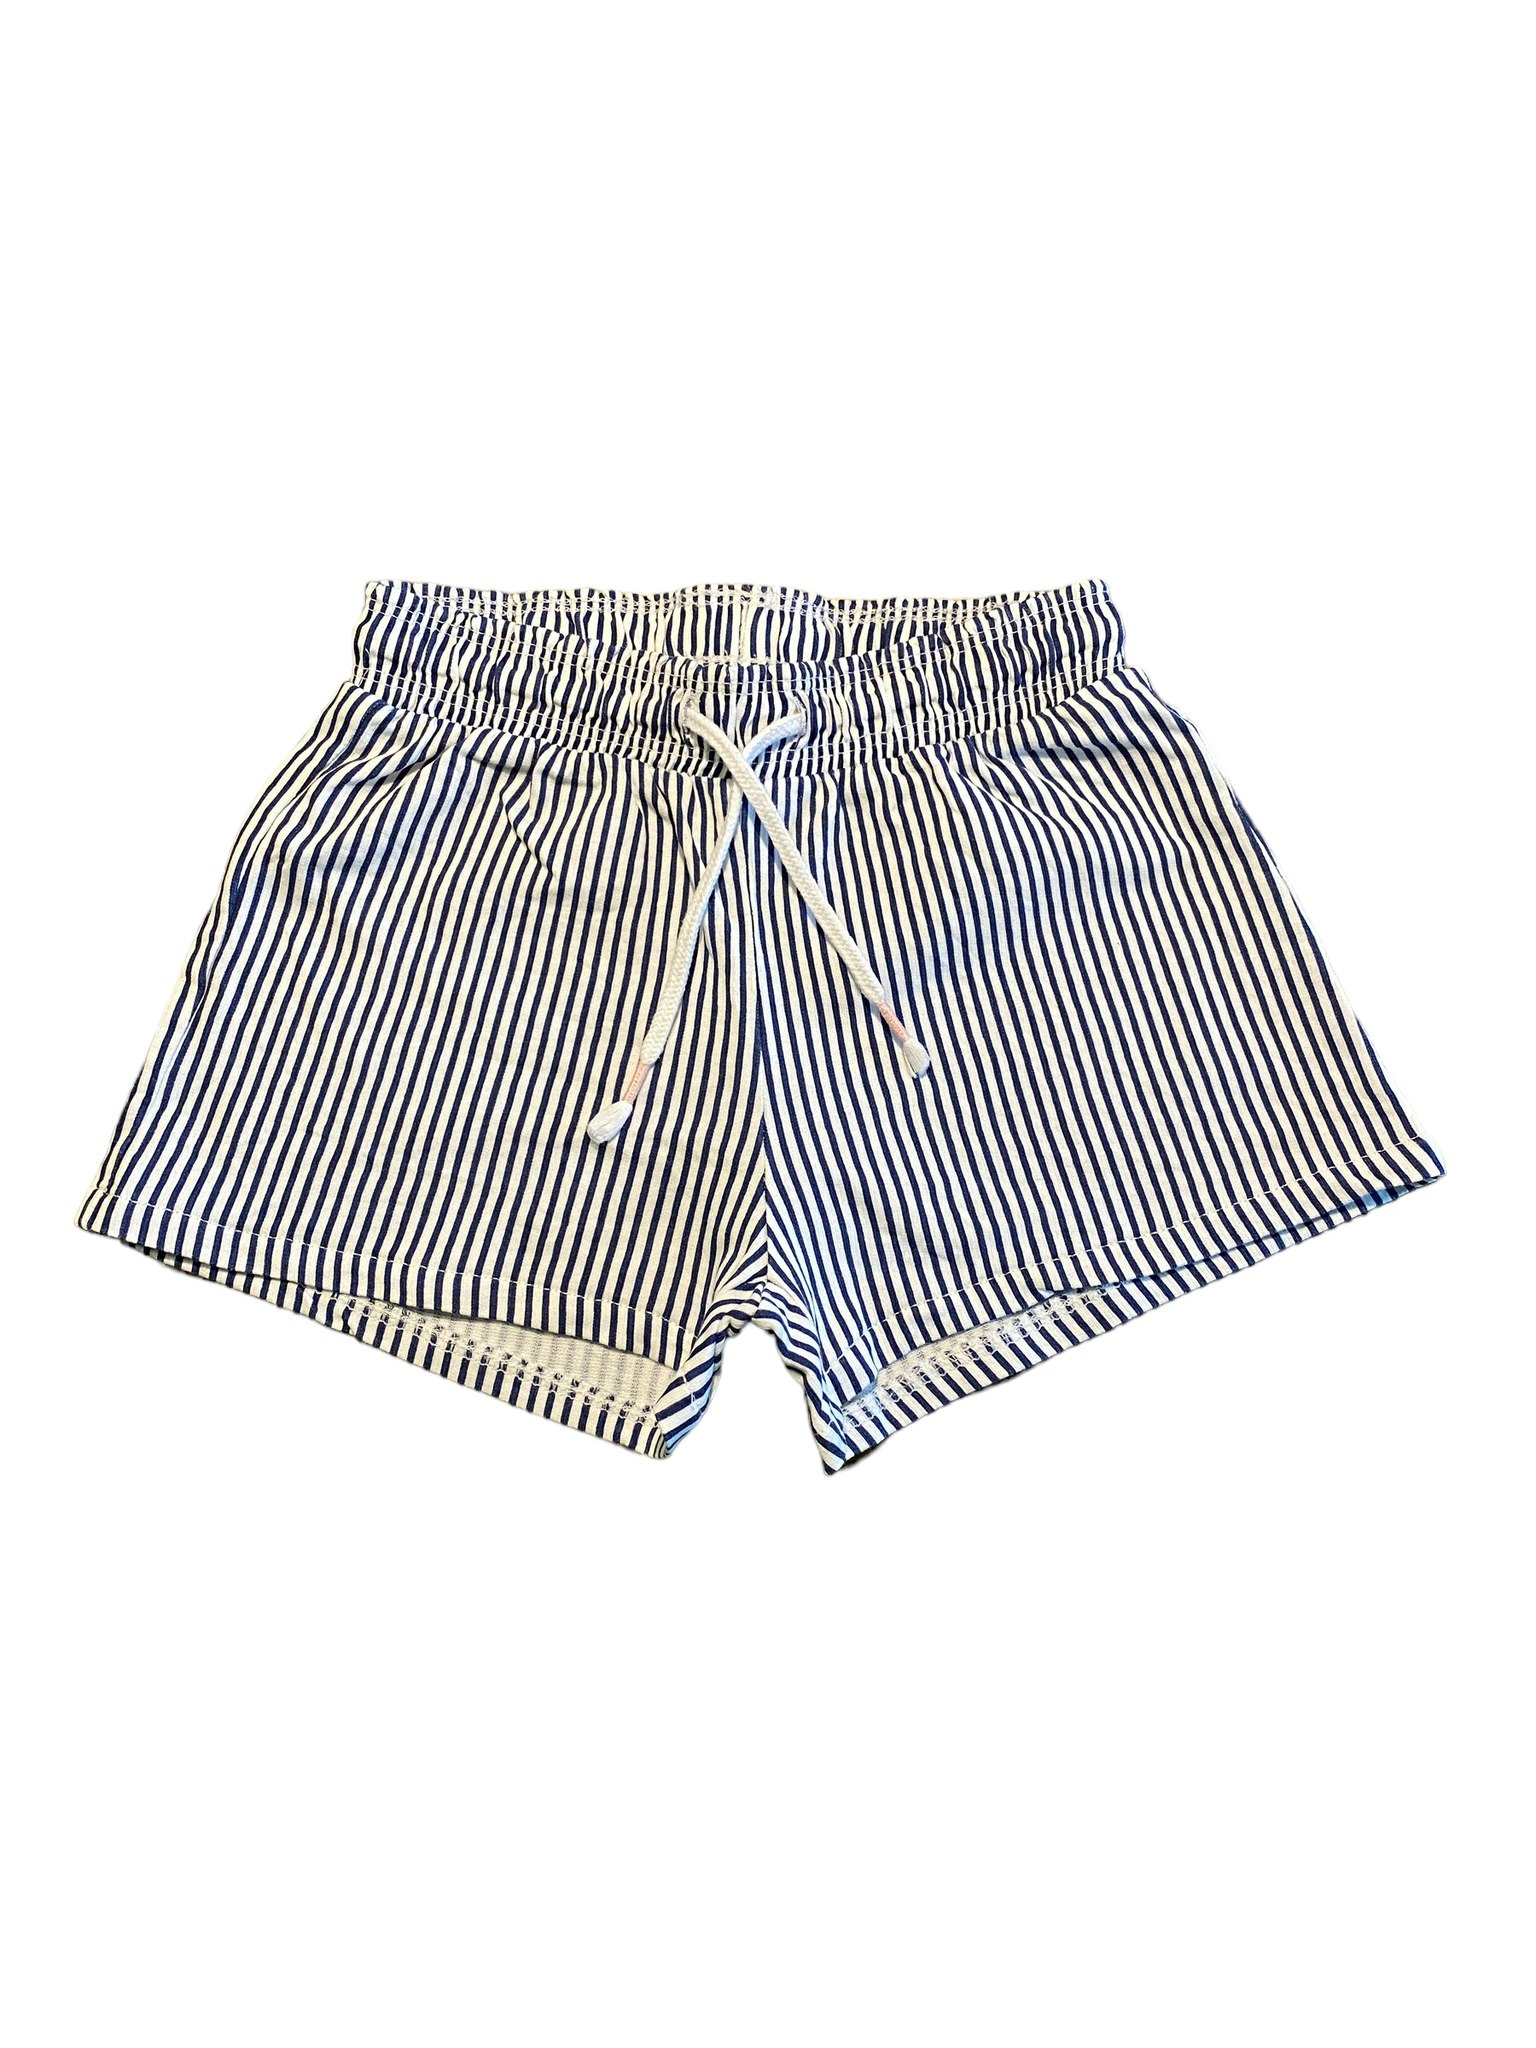 Randiga shorts, HM, stl 122/128